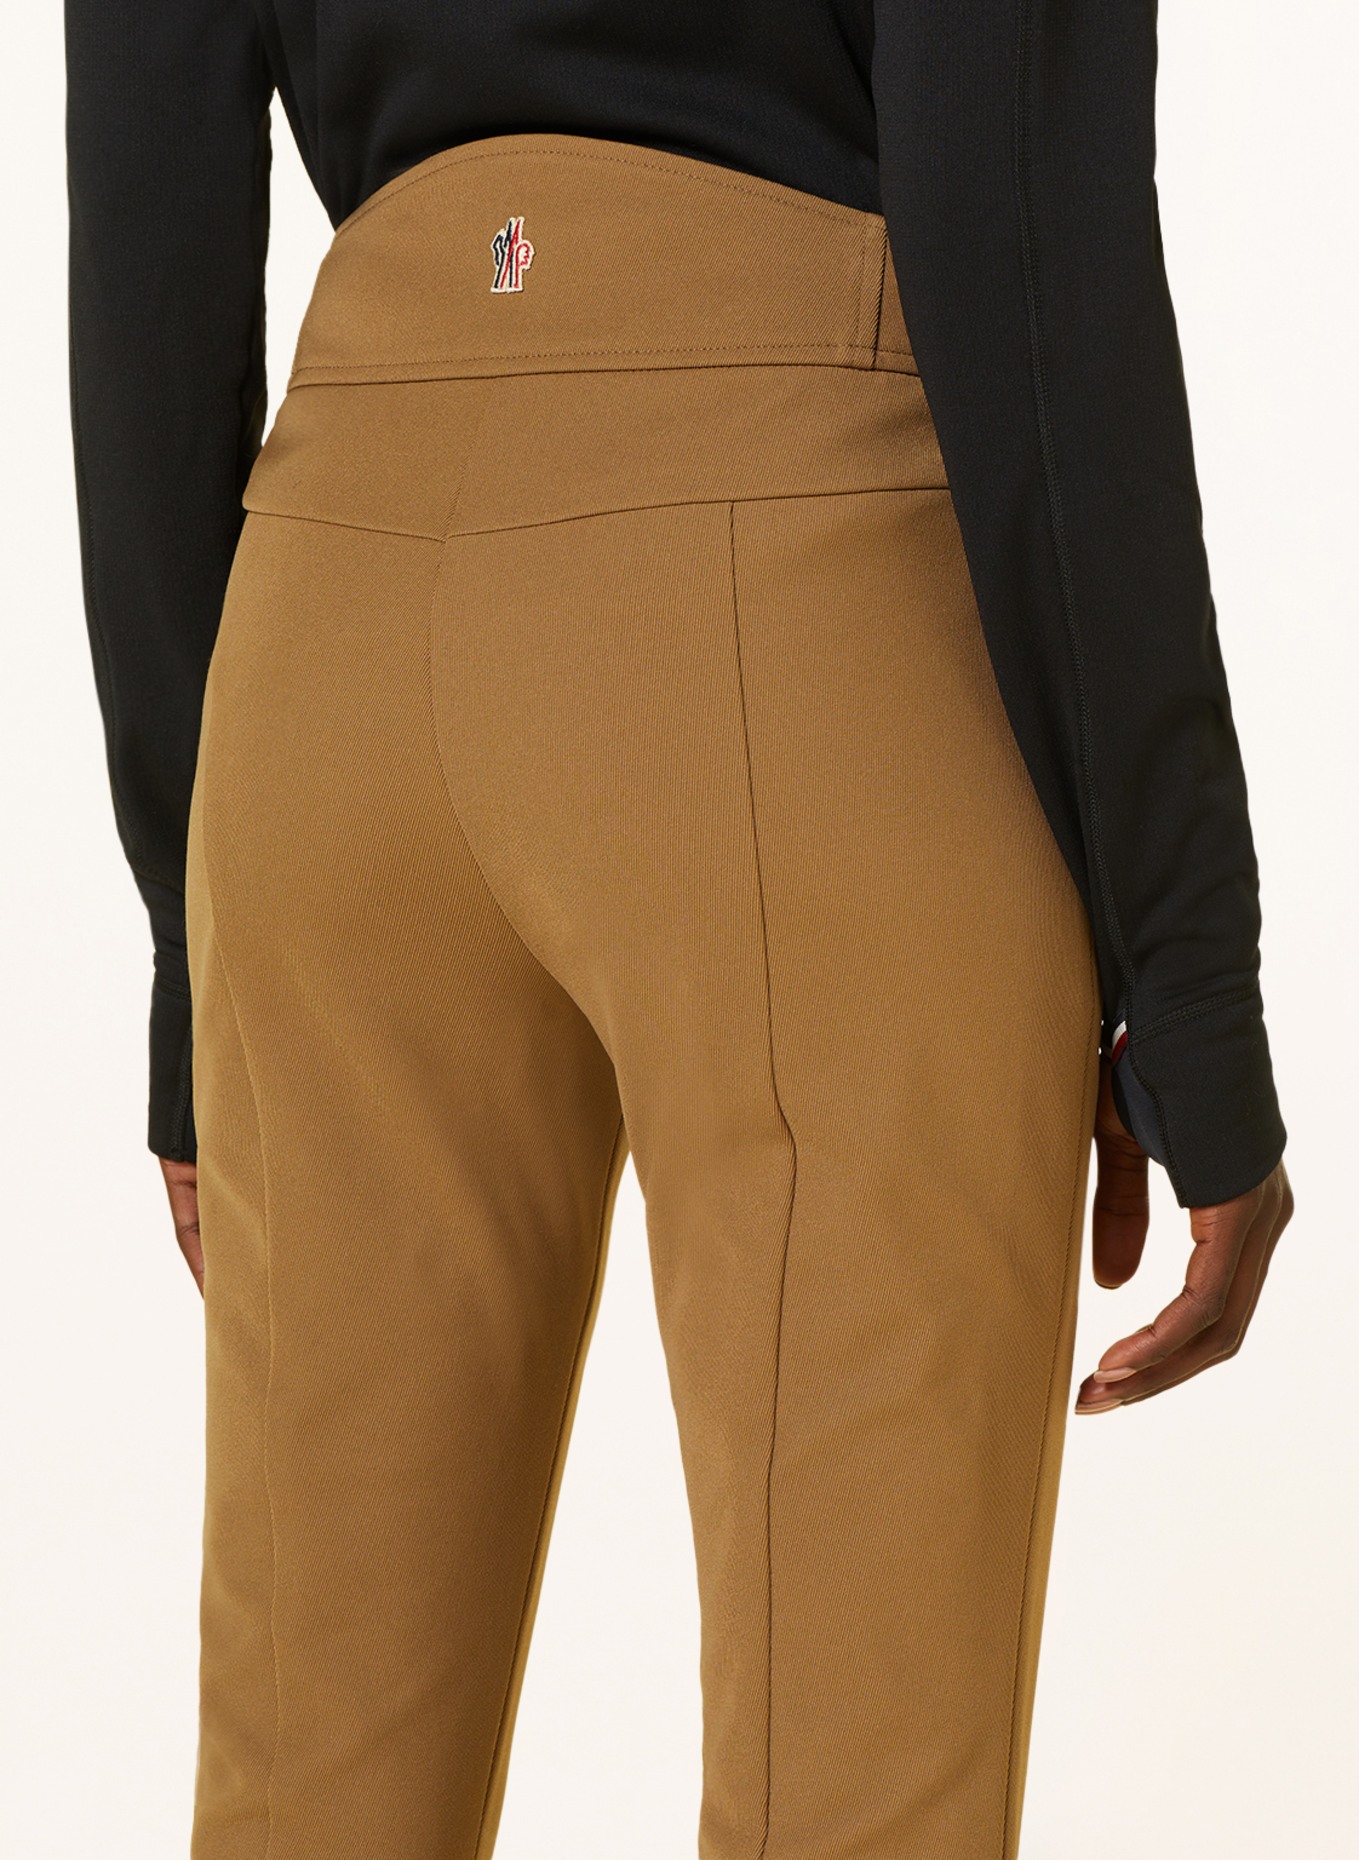 MONCLER GRENOBLE Ski pants, Color: BROWN (Image 5)